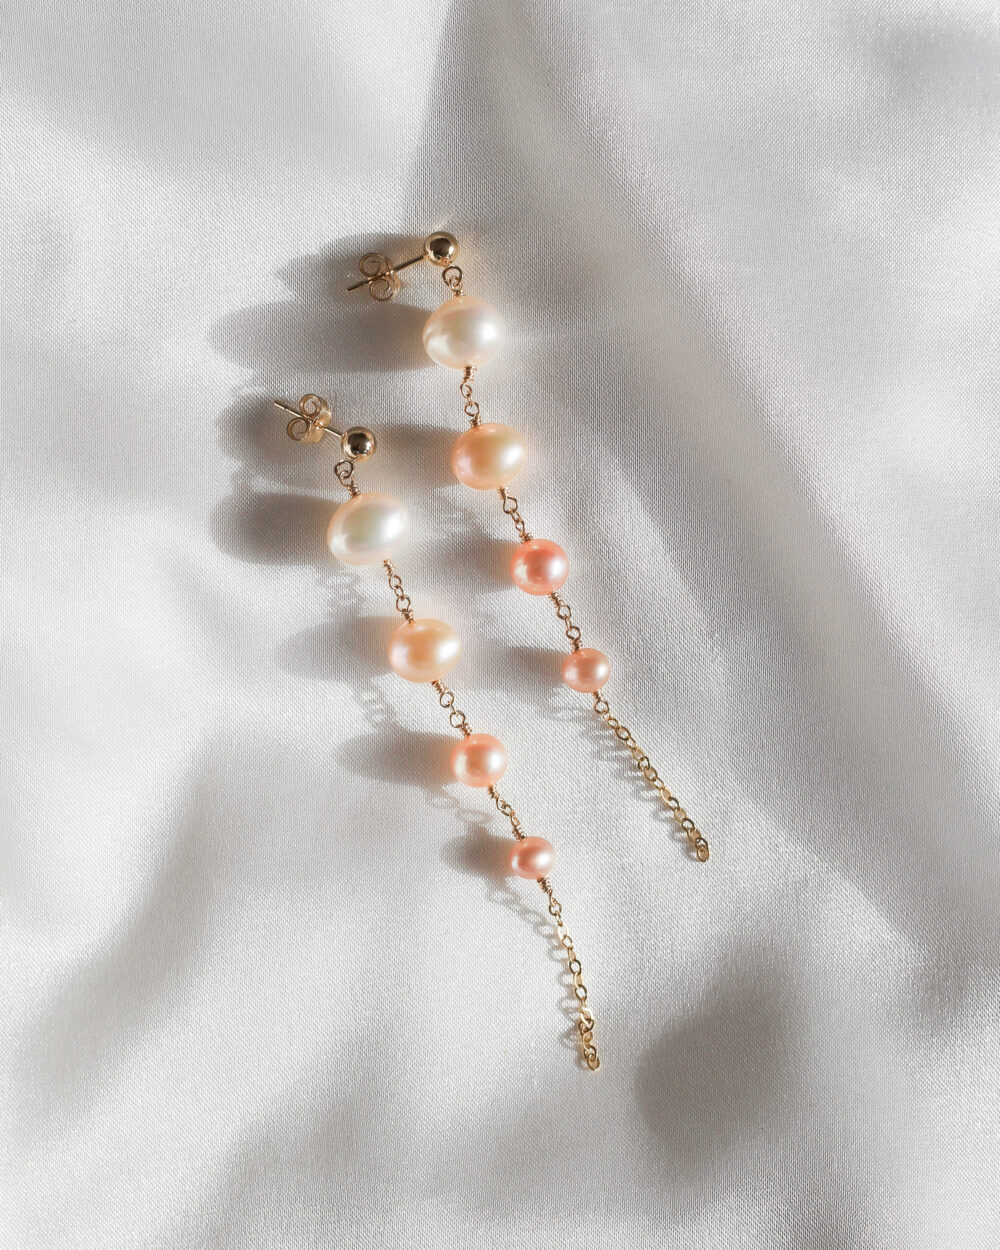 Swayng Pearls lange glanzende parel oorhangers met vier zoetwaterparels in kleur van wit naar donkerzalm tussen een gouden ketting verwerkt.